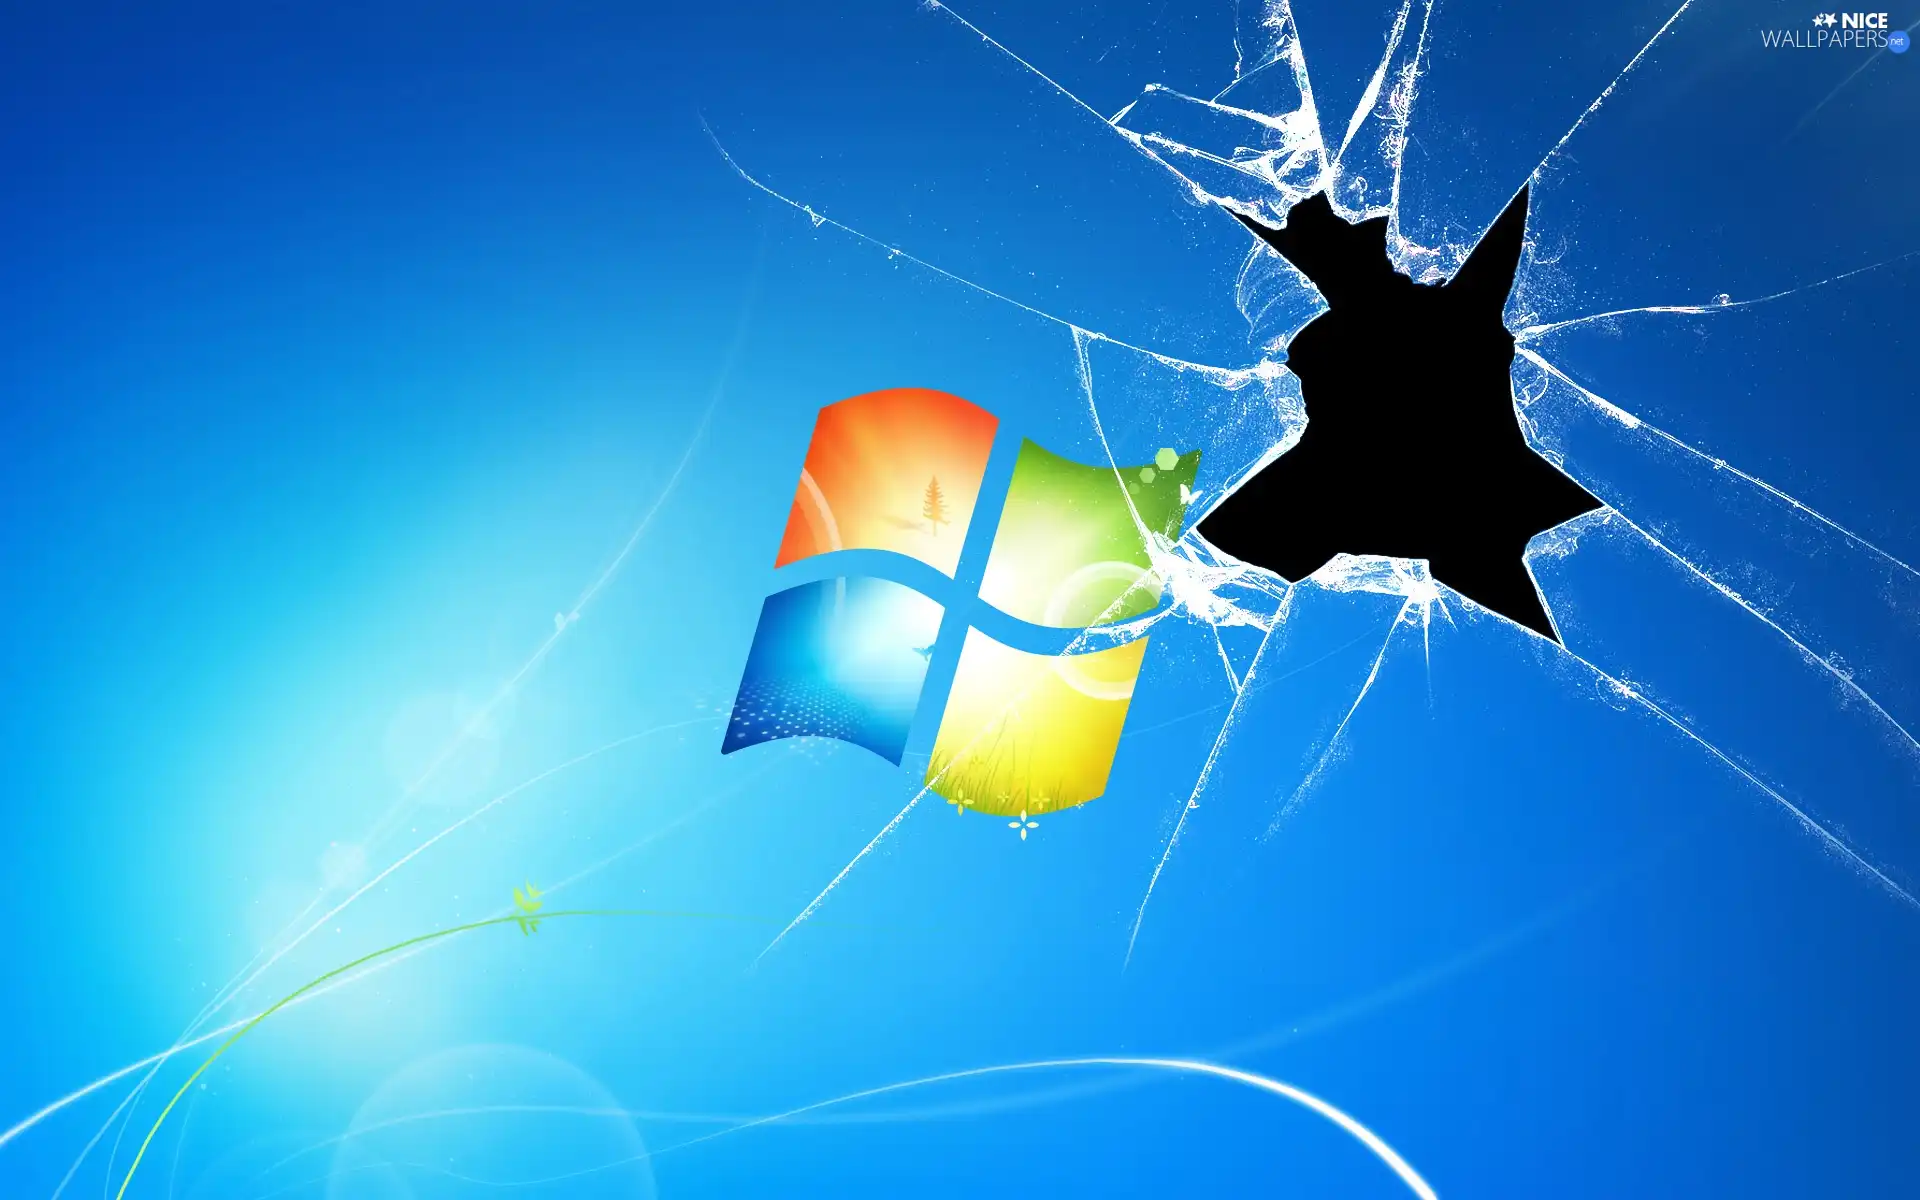 monitor, Windows 7, broken